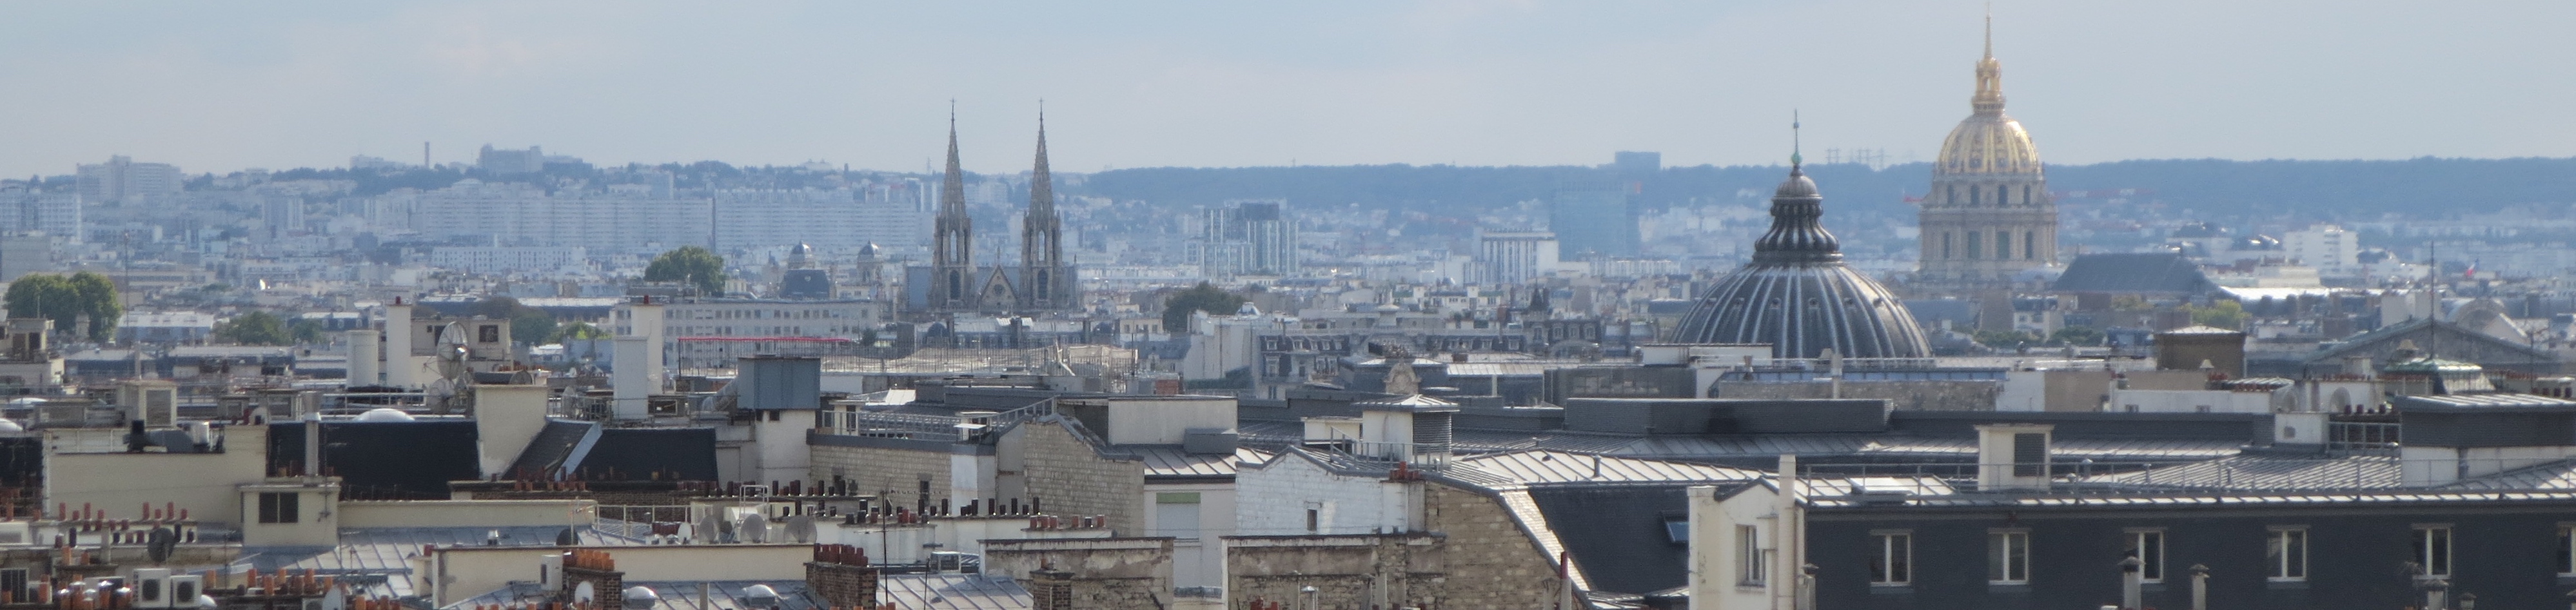 Terrasse Warenhaus Galeries Lafayette Blick auf die Dächer Kamine Tuerme und Kuppeln von Paris